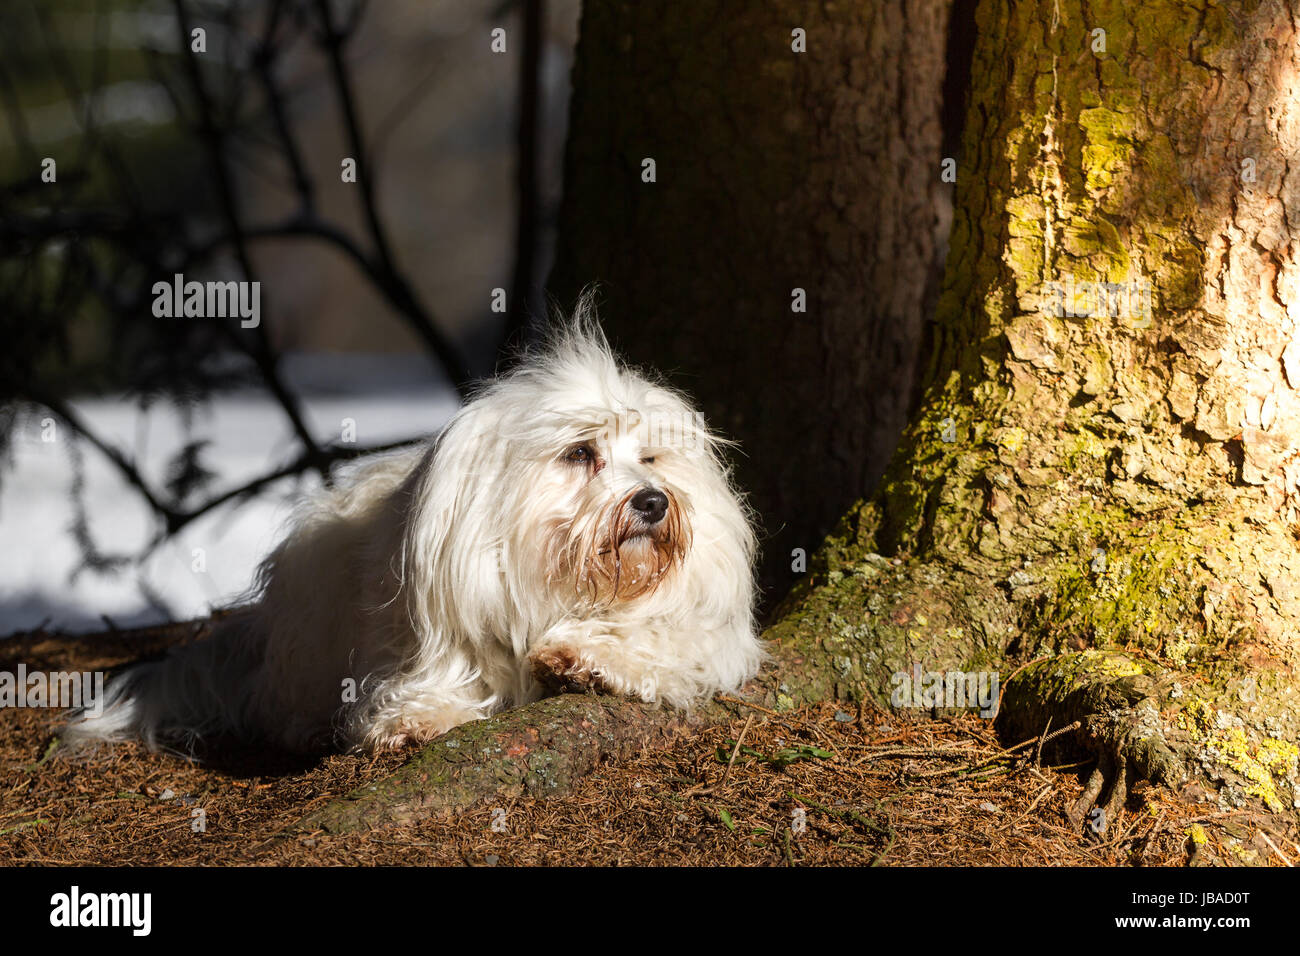 Ein Langhaar Hund liegt auf einer Baumwurzel und genießt die Sonnenstrahlen auf seinem Fell. Stock Photo